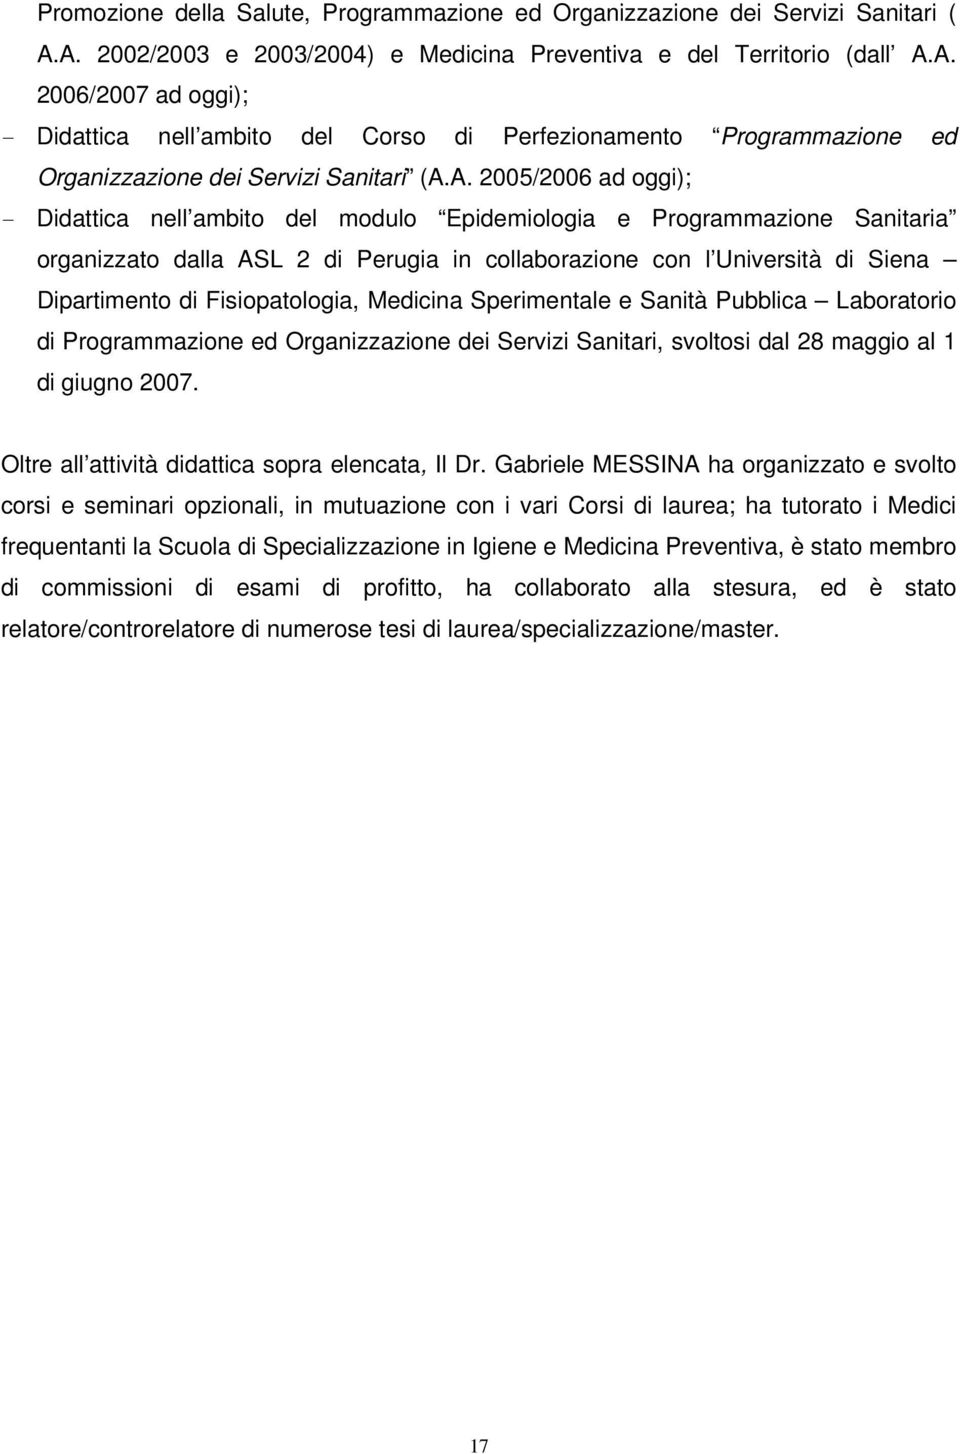 A. 2005/2006 ad oggi); - Didattica nell ambito del modulo Epidemiologia e Programmazione Sanitaria organizzato dalla ASL 2 di Perugia in collaborazione con l Università di Siena Dipartimento di